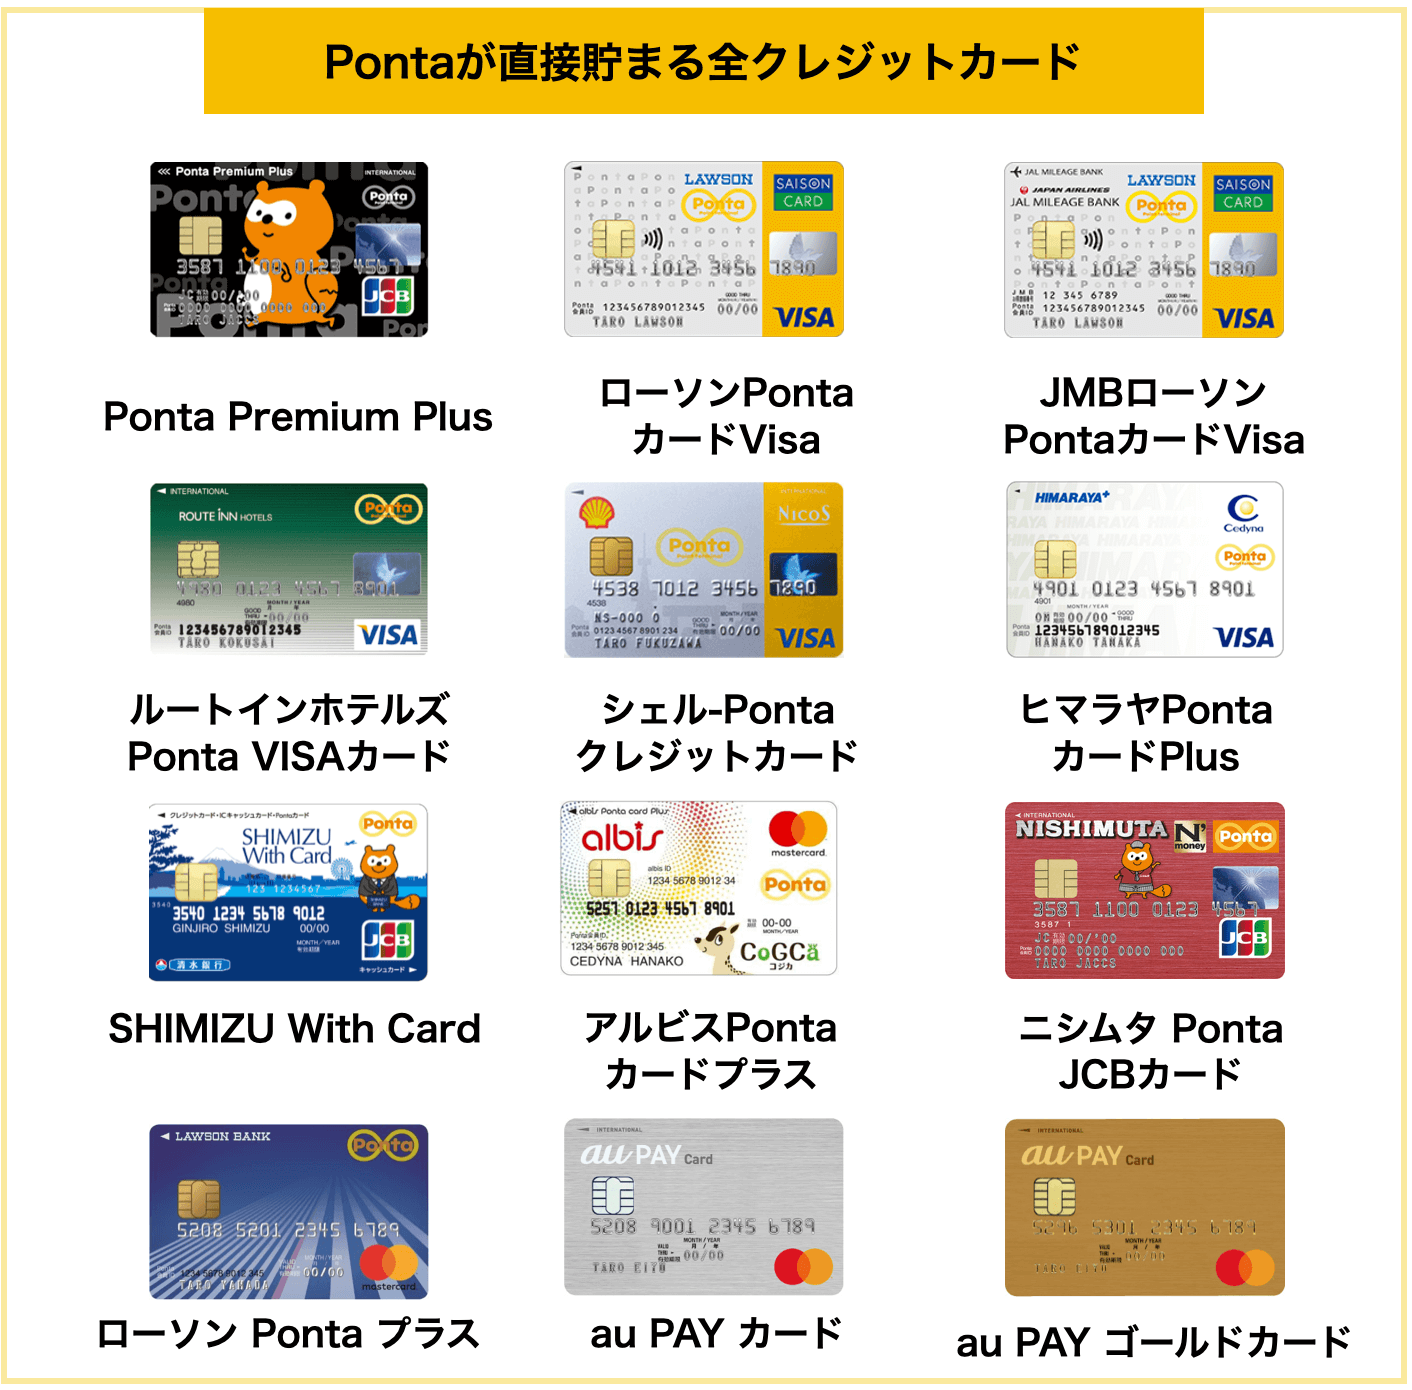 Pontaがたまりやすいクレジットカード7選 21年版